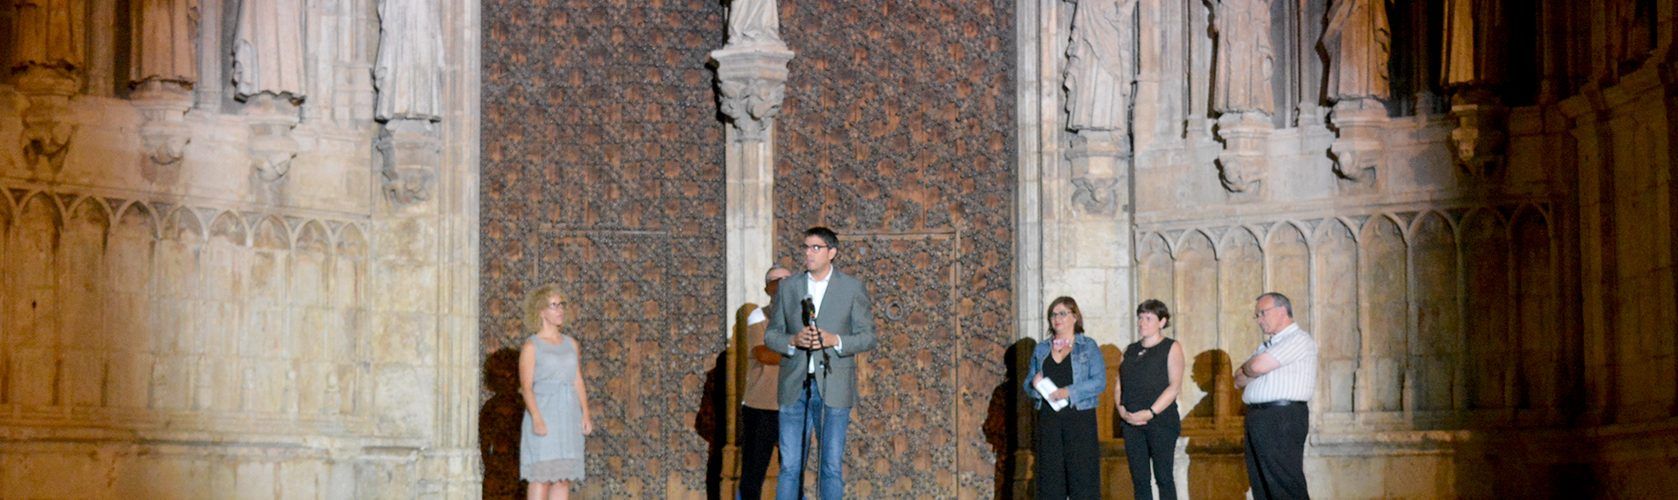 Morella presenta la restauració de la Porta dels Apòstols amb un vídeo mapping